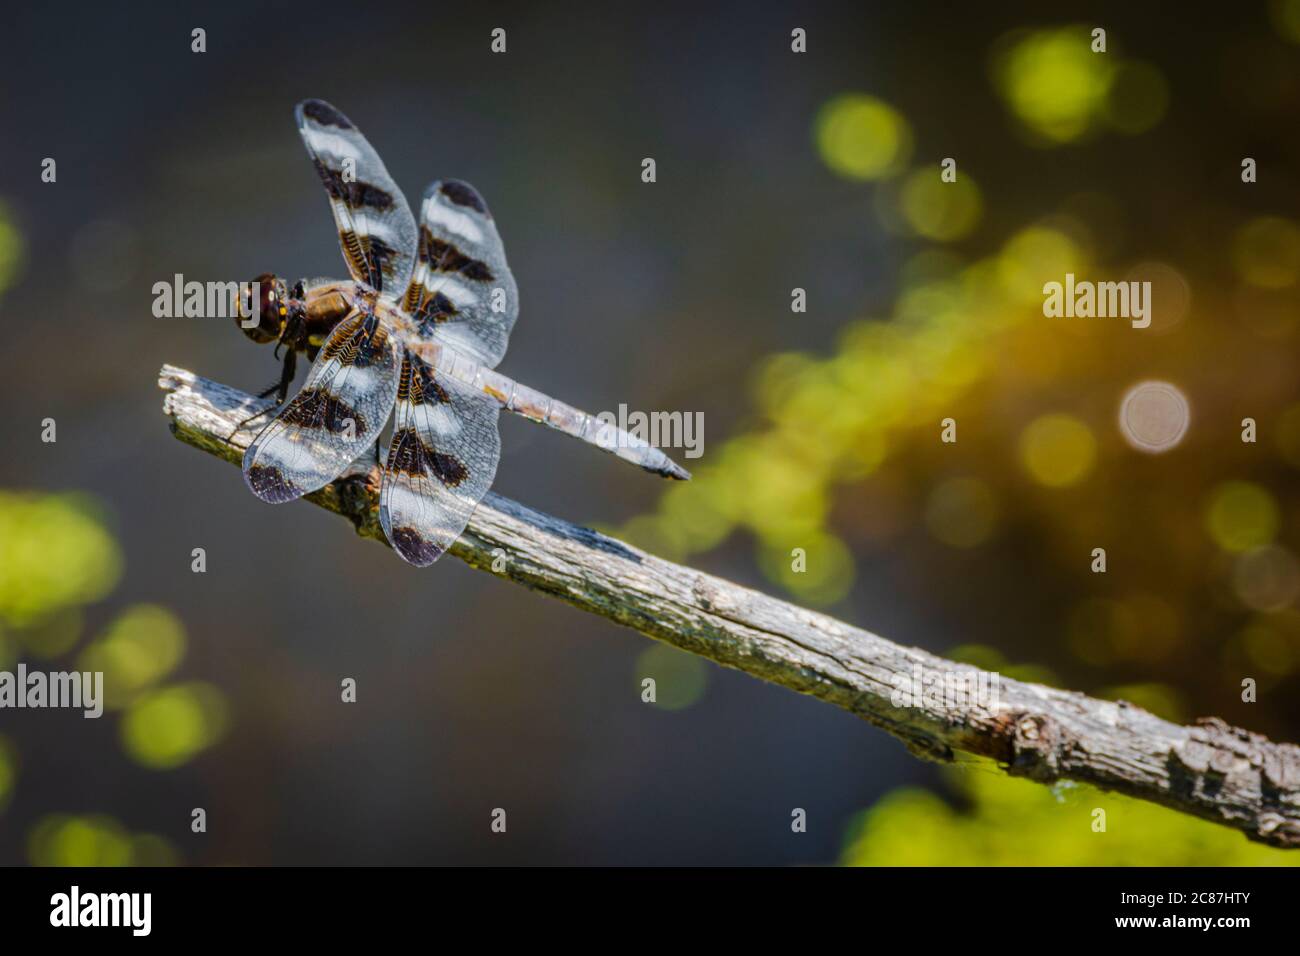 Dragonfly skimmer a dodici punte (Libellula pulchella) che riposa sul gambo del salice sopra lo stagno della palude, Castle Rock Colorado USA. Foto scattata a luglio. Foto Stock